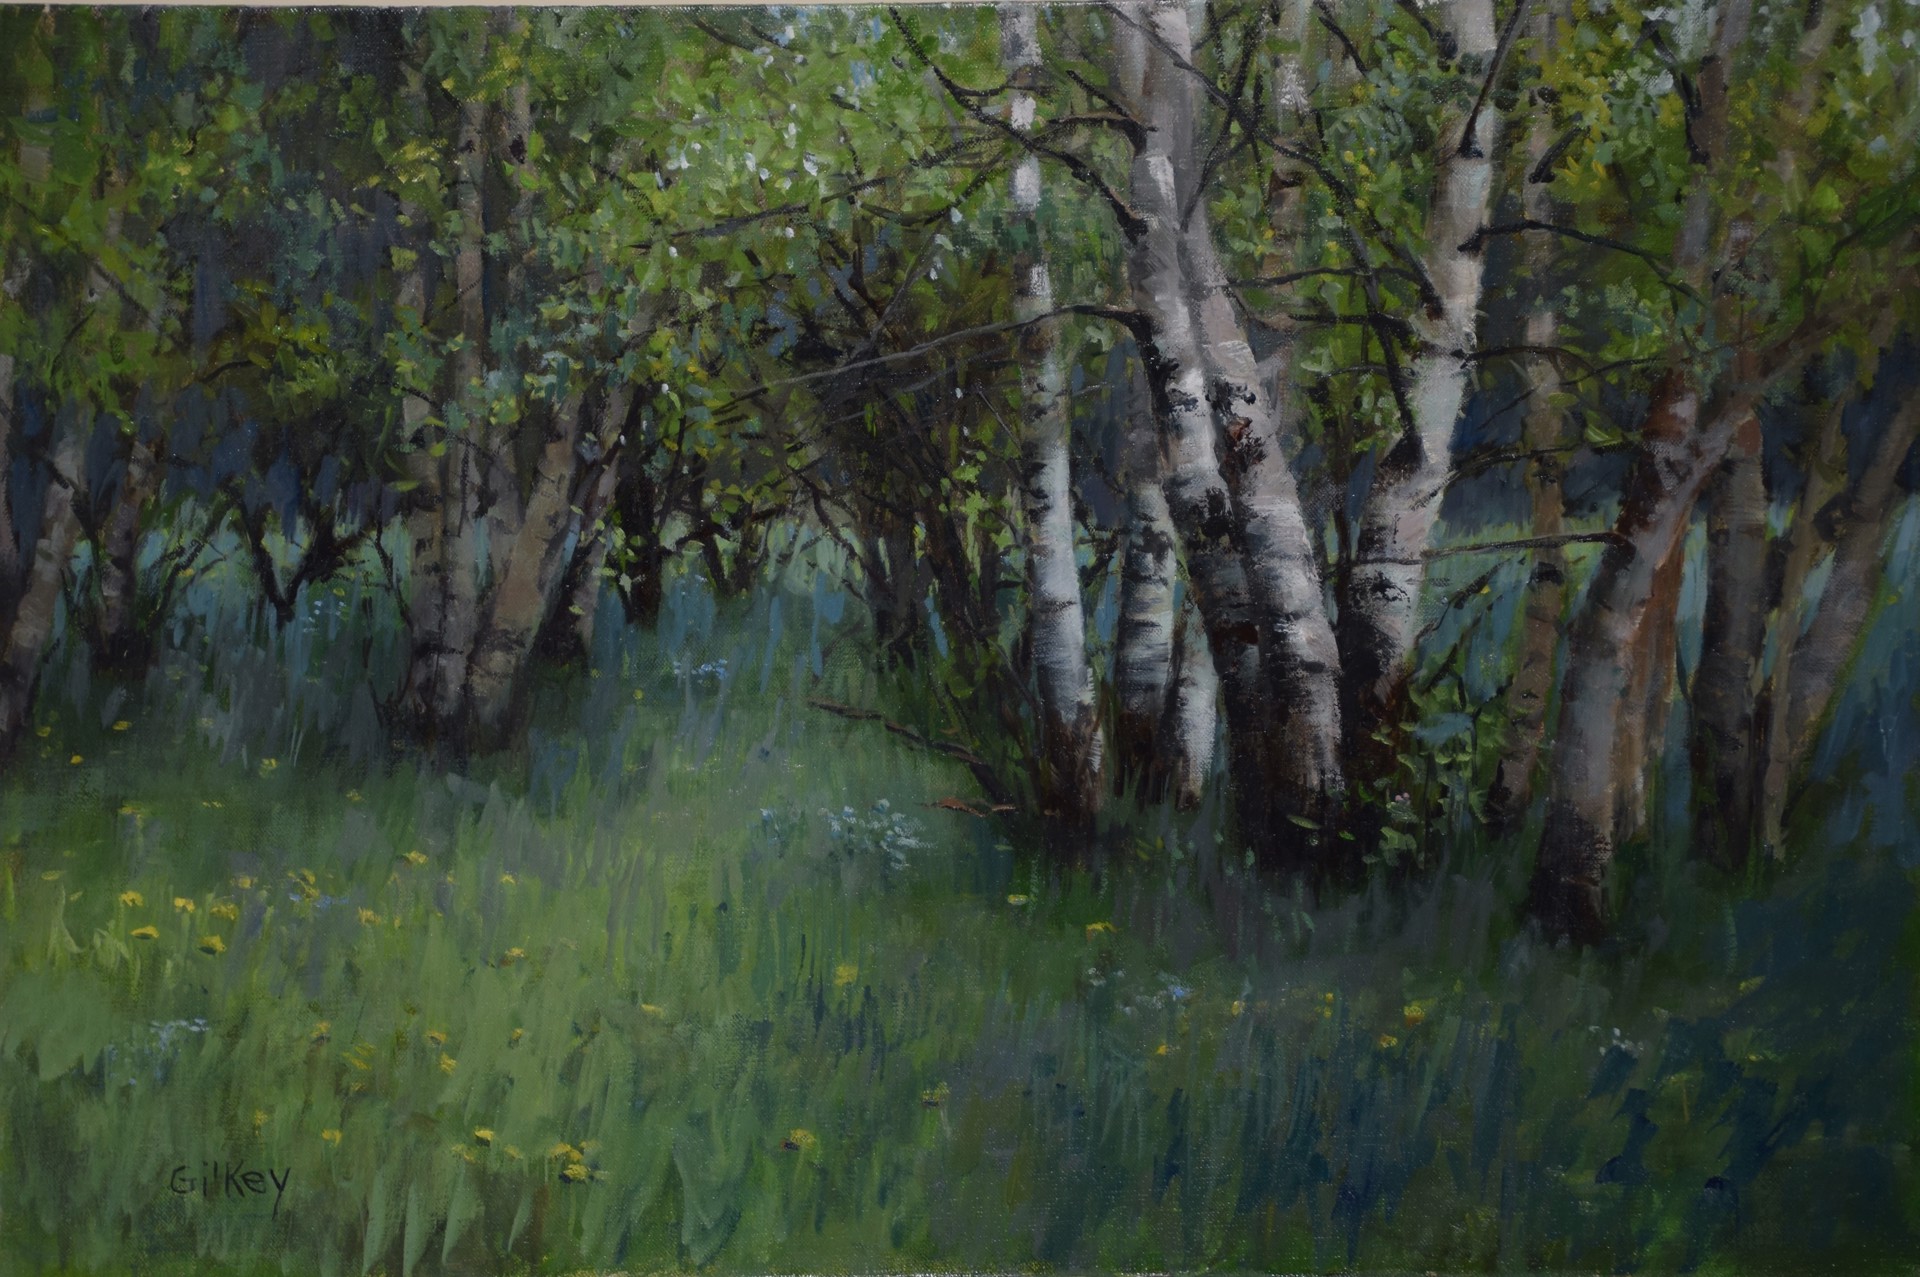 Birch Grove by Sue Gilkey